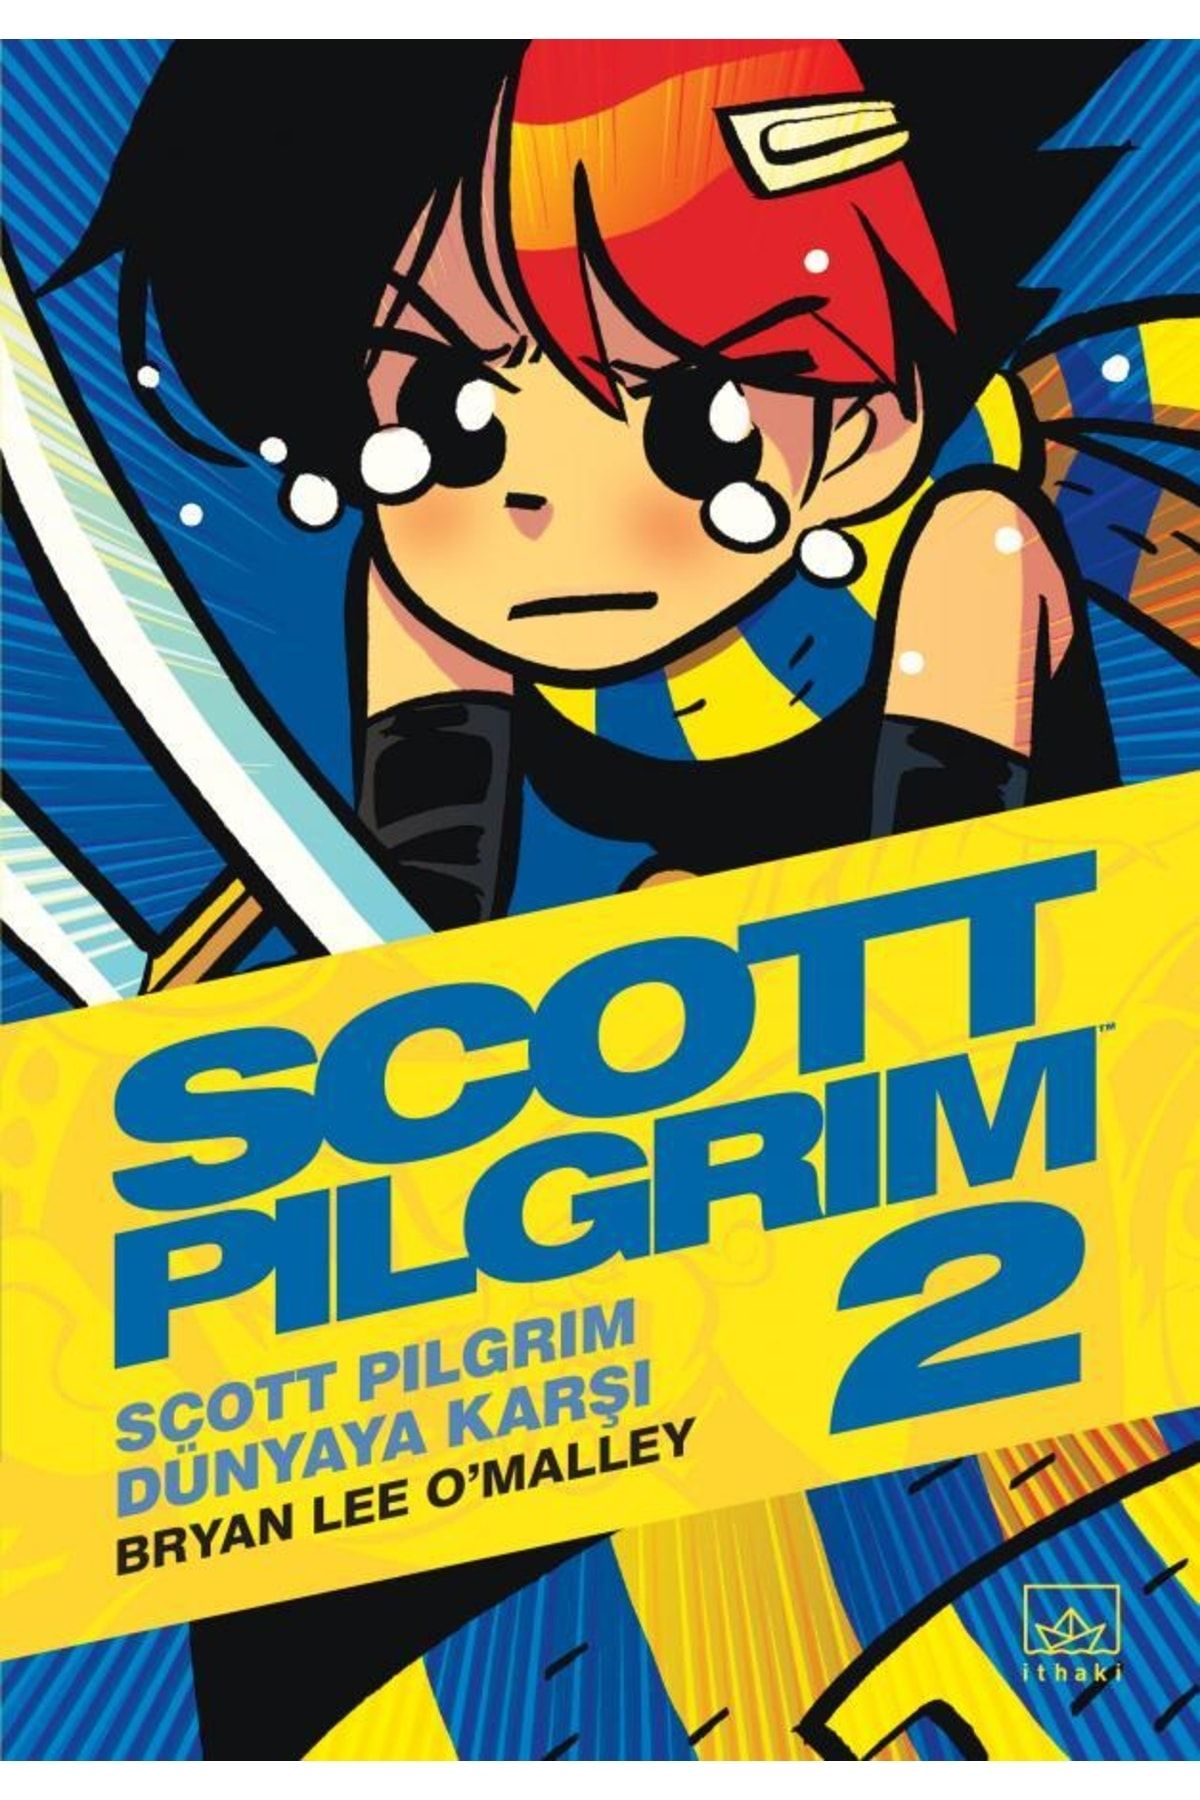 Брайан пилигрим. Скотт Пилигрим 2. Скотт Пилигрим комикс 2 том. Комикс Скотт Пилигрим в Цветном издании. Комикс Пилигрим цветное издание.